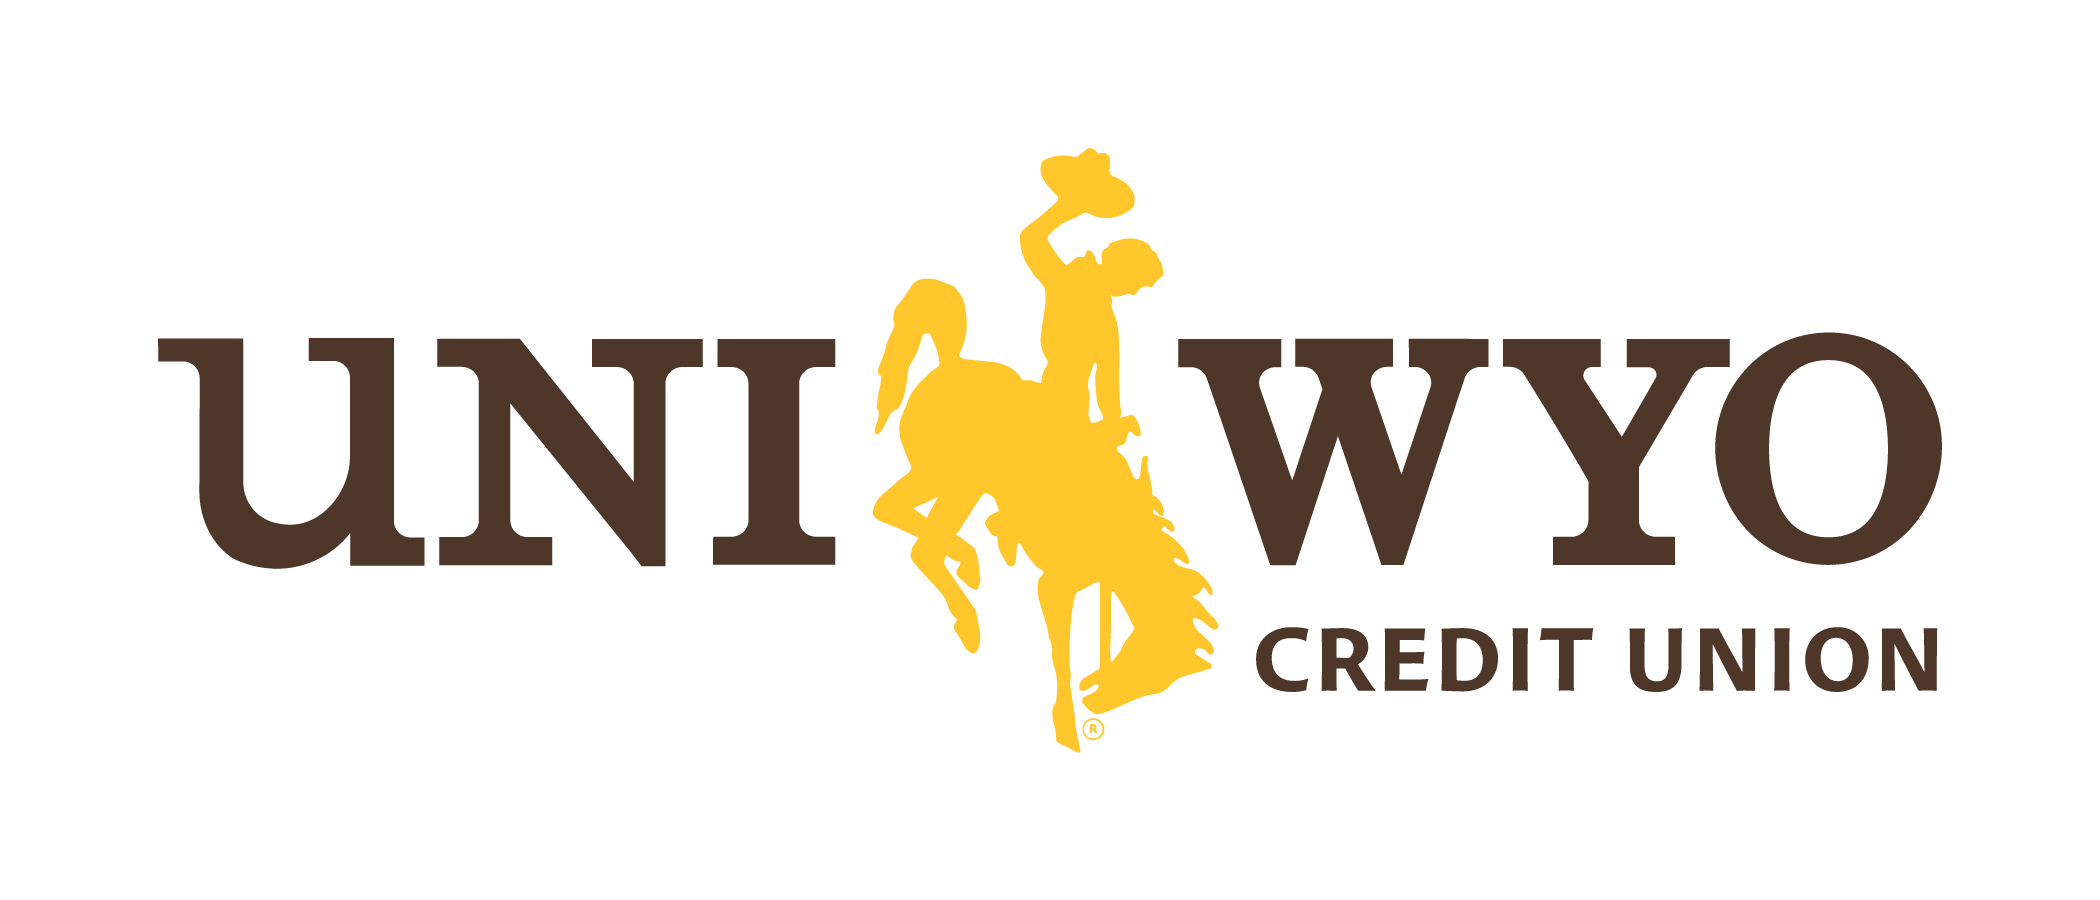 UniWyo logo